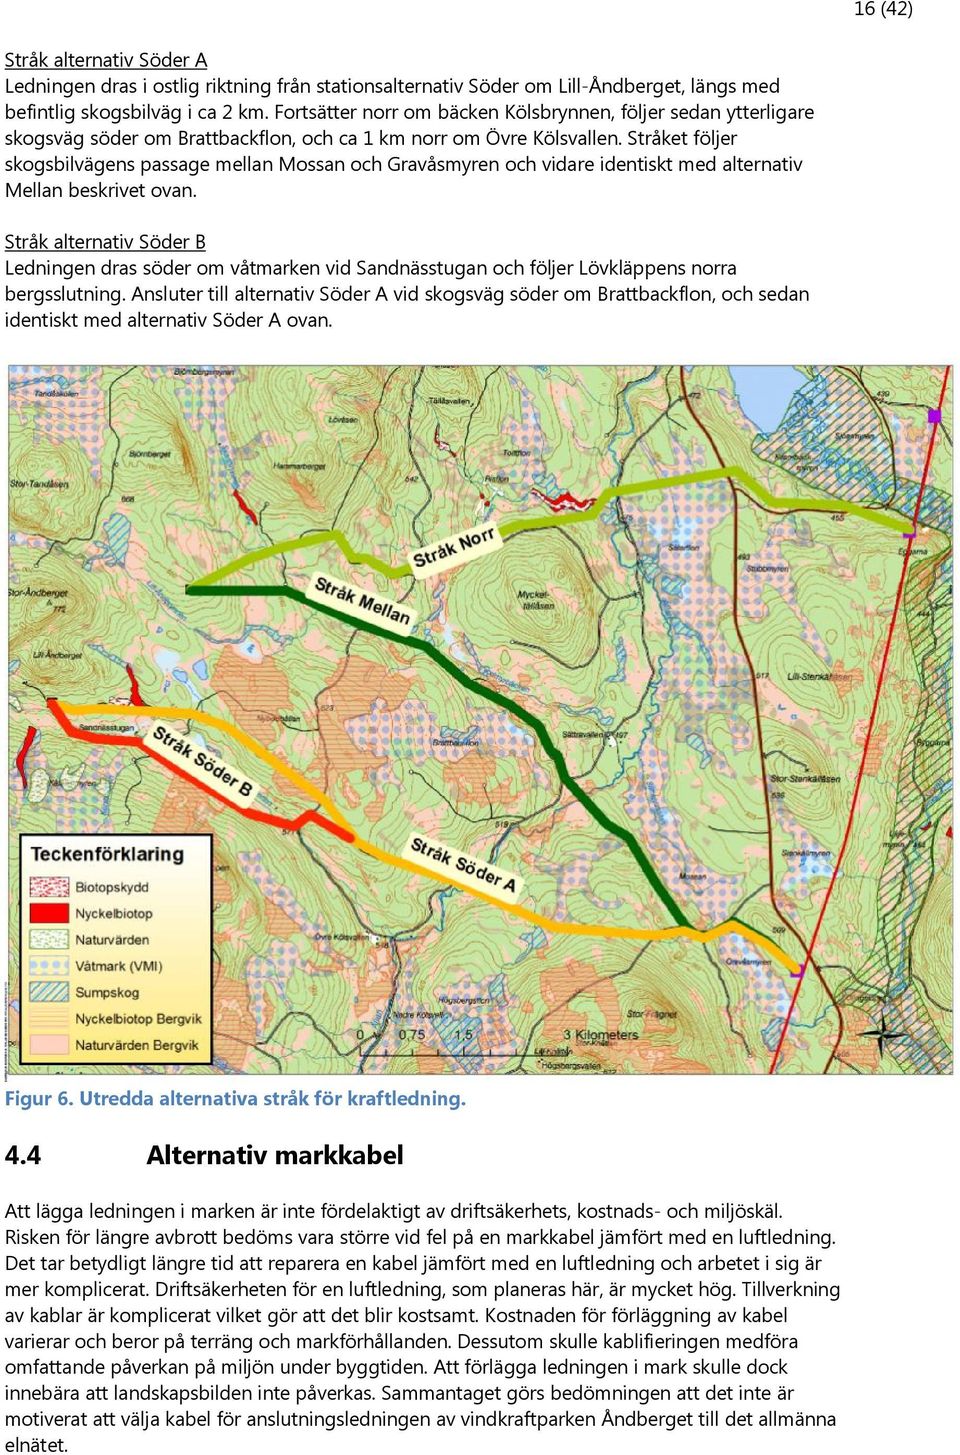 Stråket följer skogsbilvägens passage mellan Mossan och Gravåsmyren och vidare identiskt med alternativ Mellan beskrivet ovan.